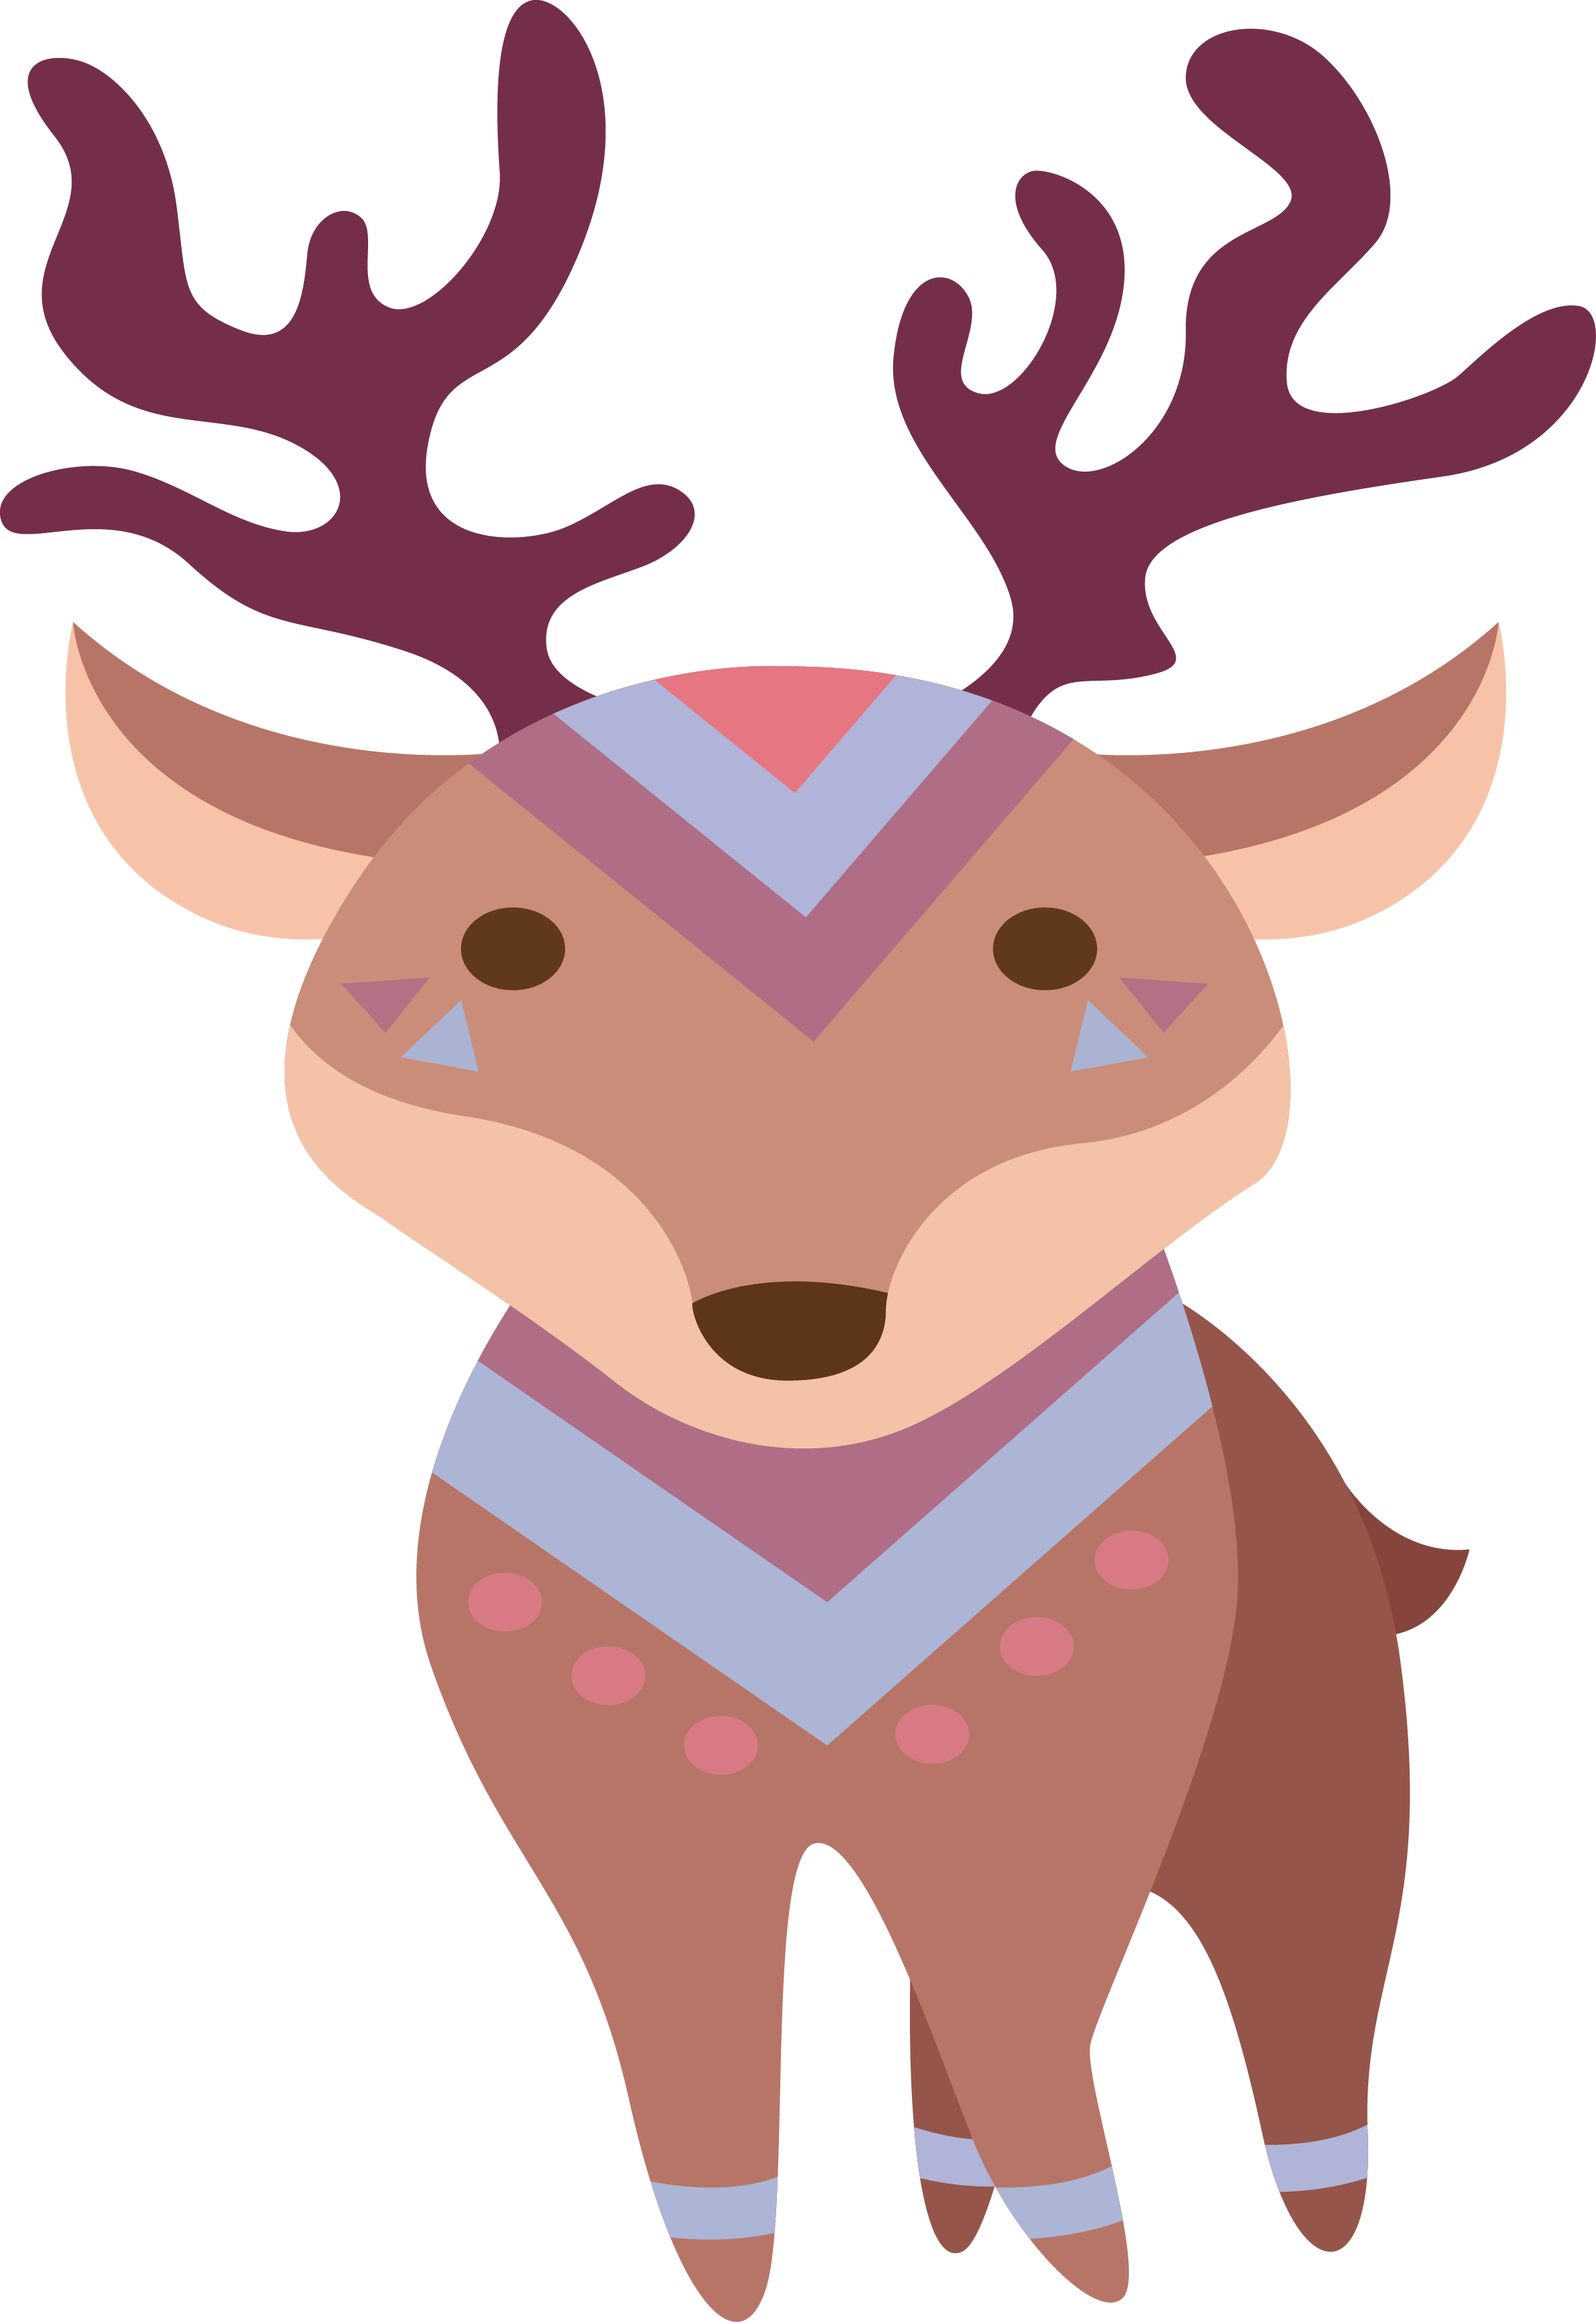 Sika Deer Cartoon - Sika Deer (2389x3476)